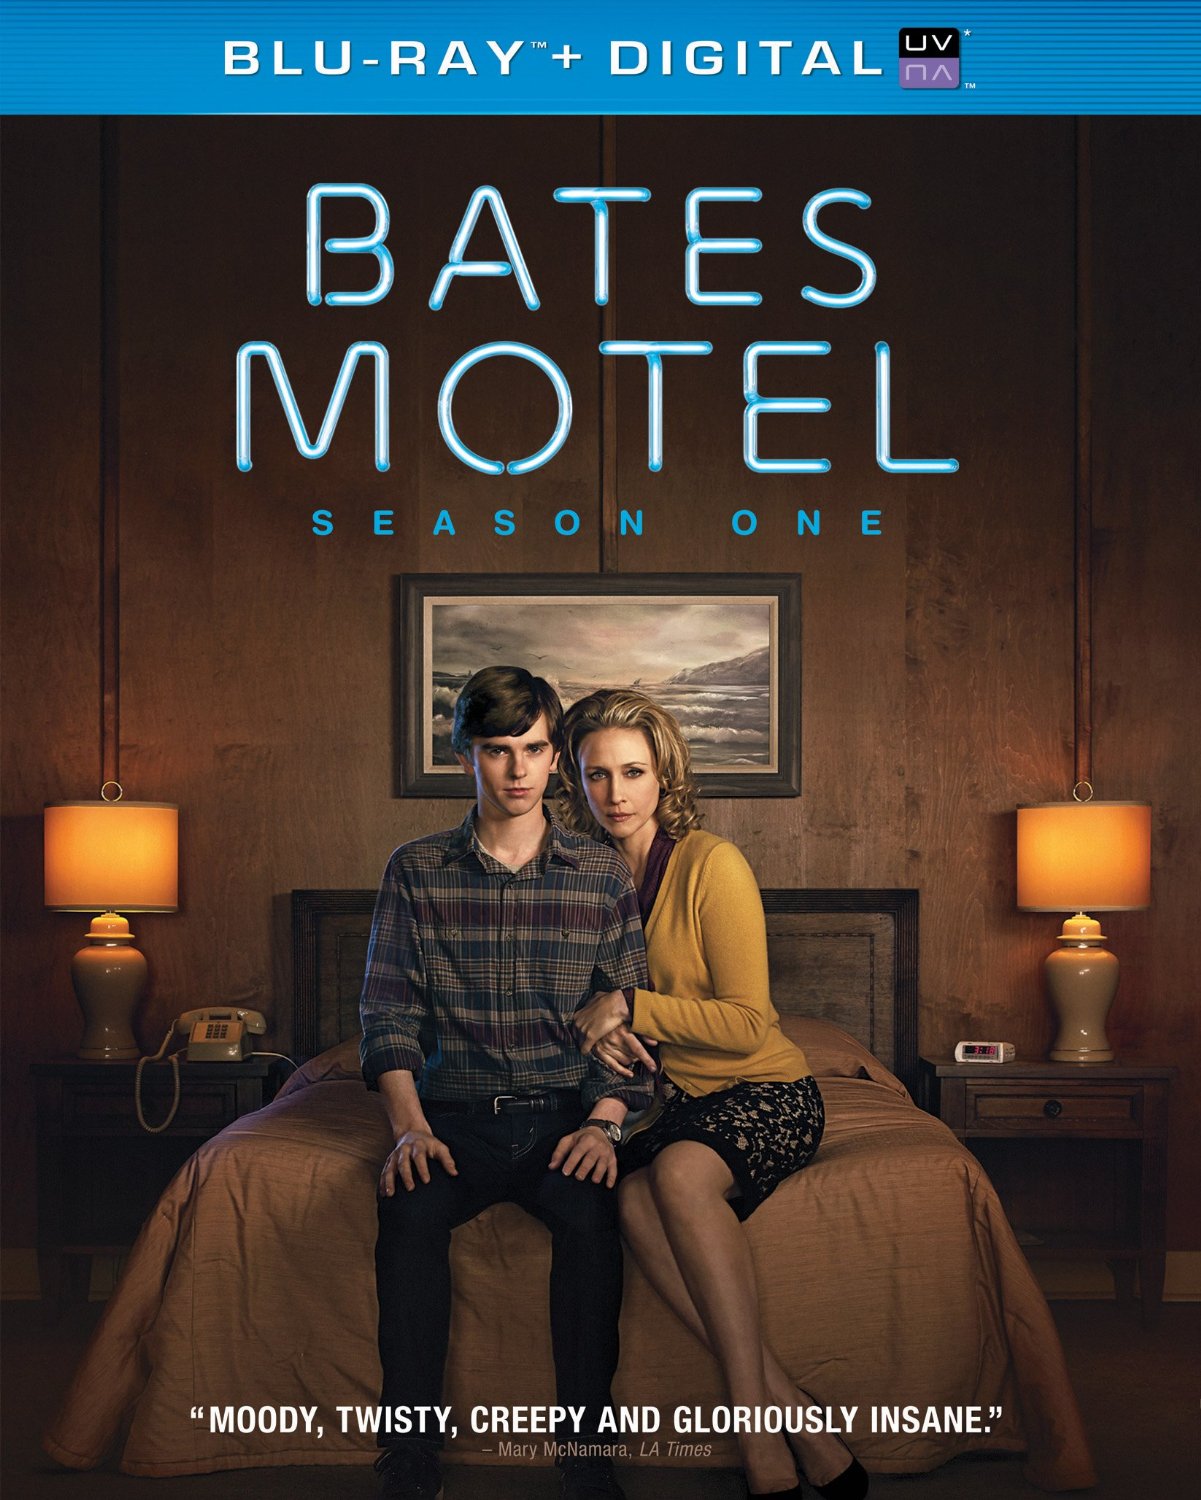 DVD Review: Bates Motel